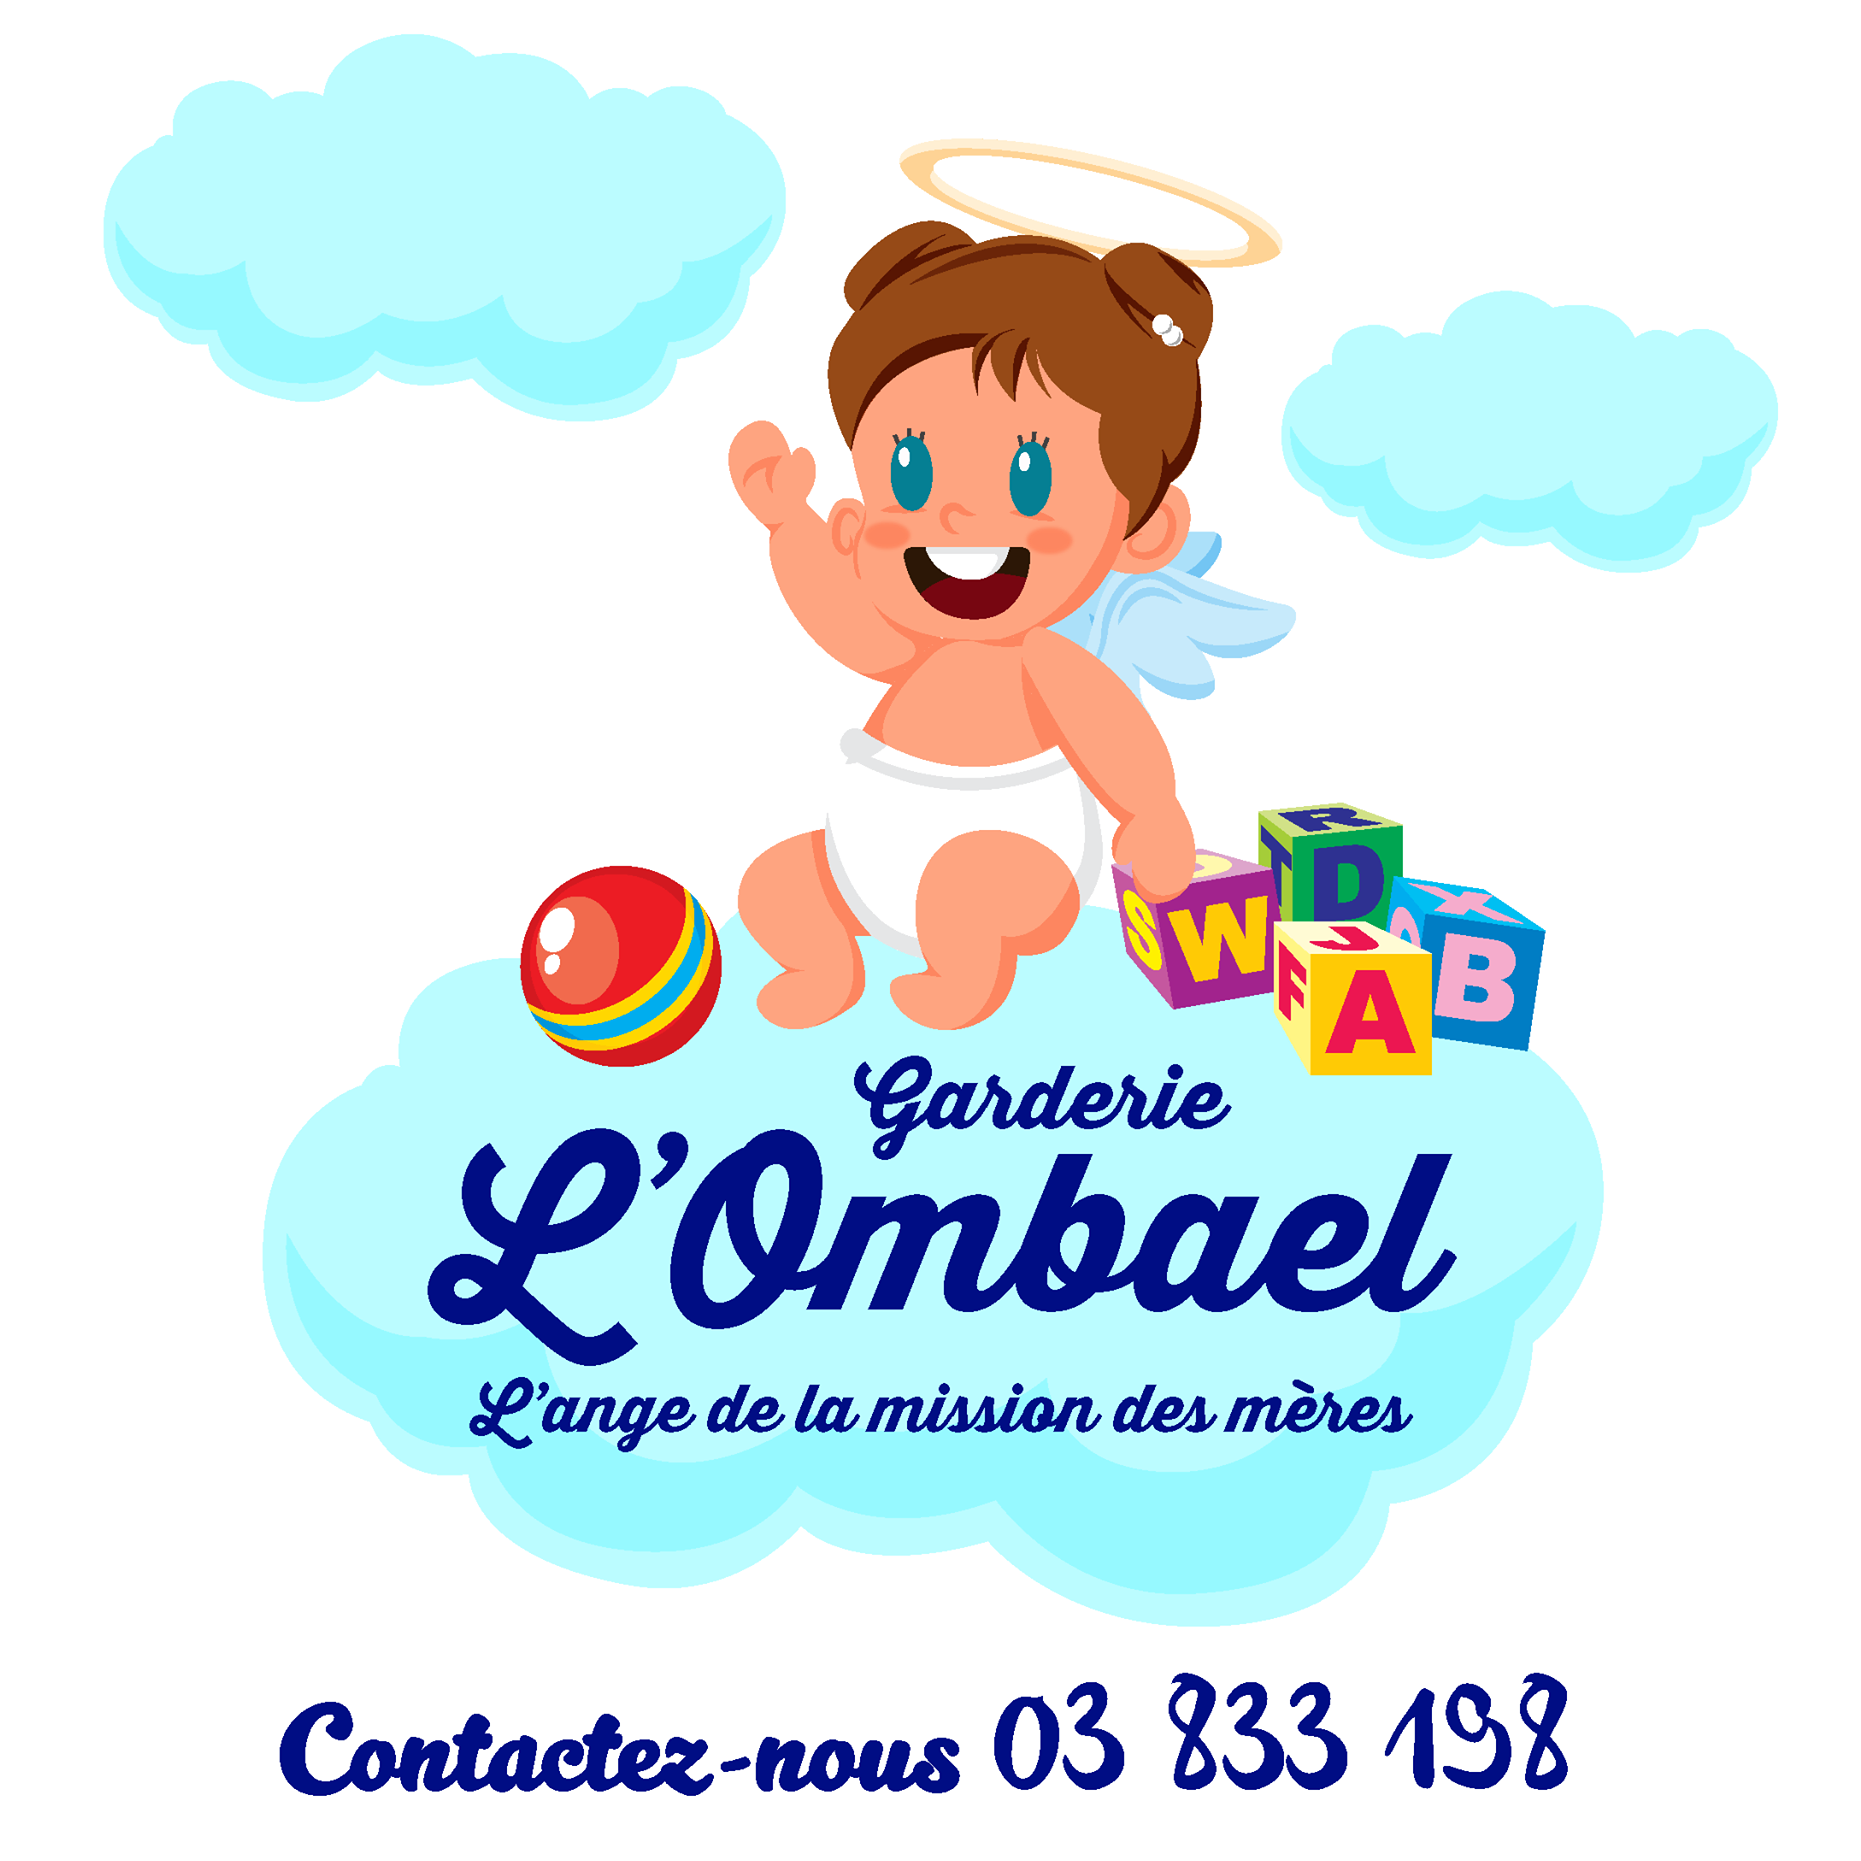 Nursery logo L'ombael